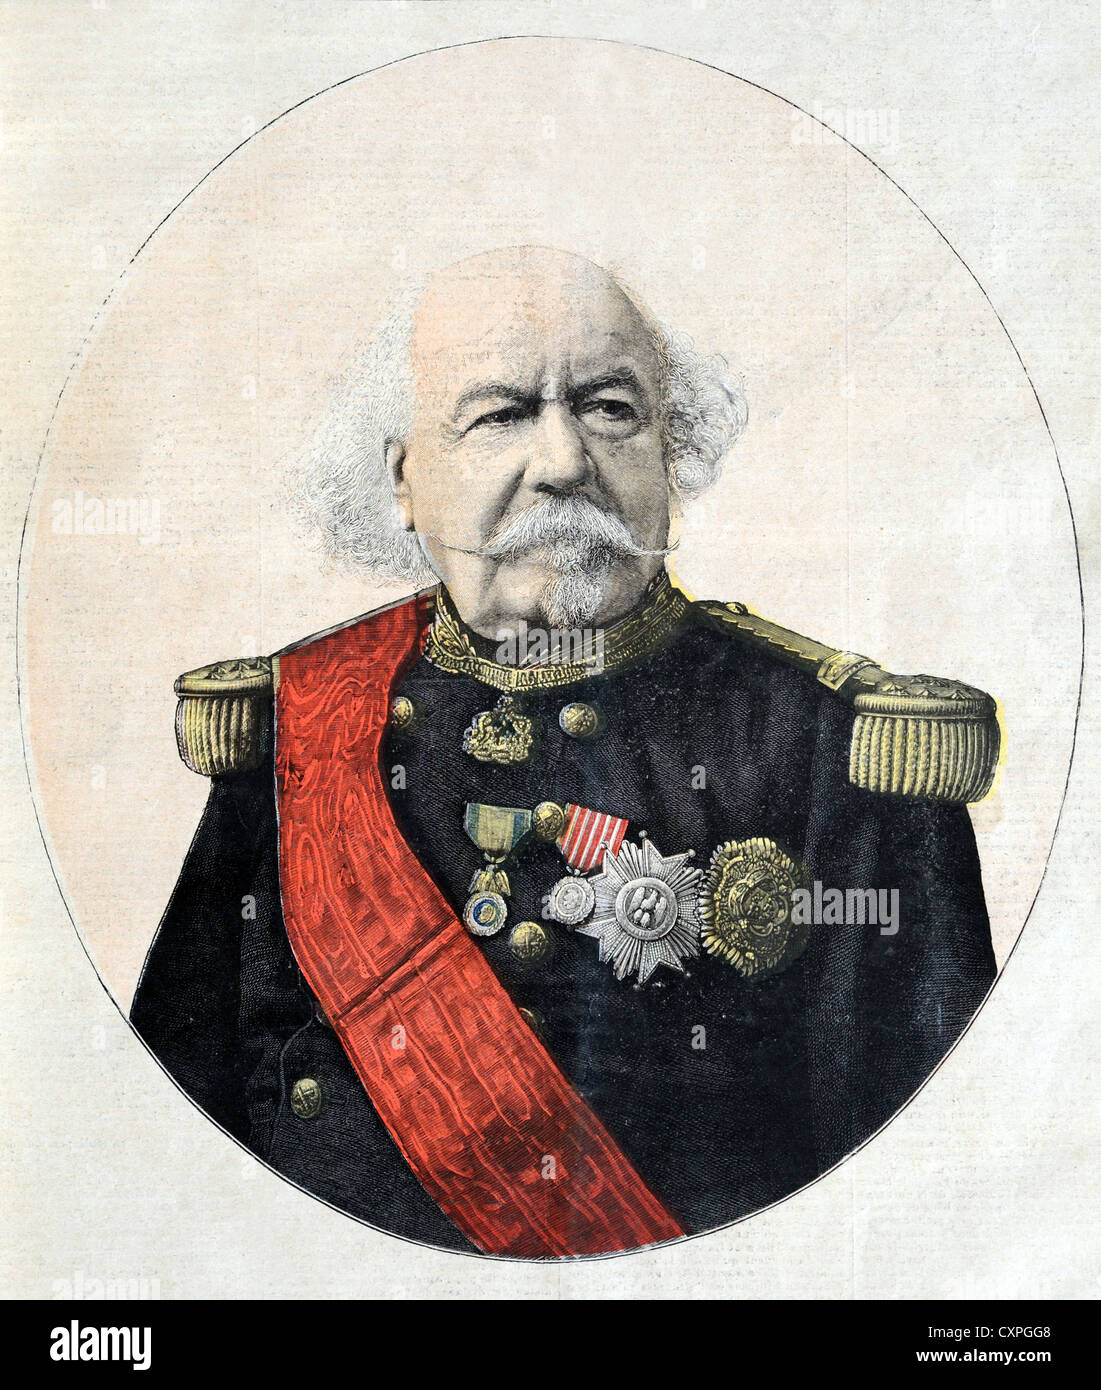 Retrato François cierto Canrobert (1809-1895) Mariscal de Francia con uniforme militar francés. Ilustración Vintage o Grabado Antiguo Foto de stock